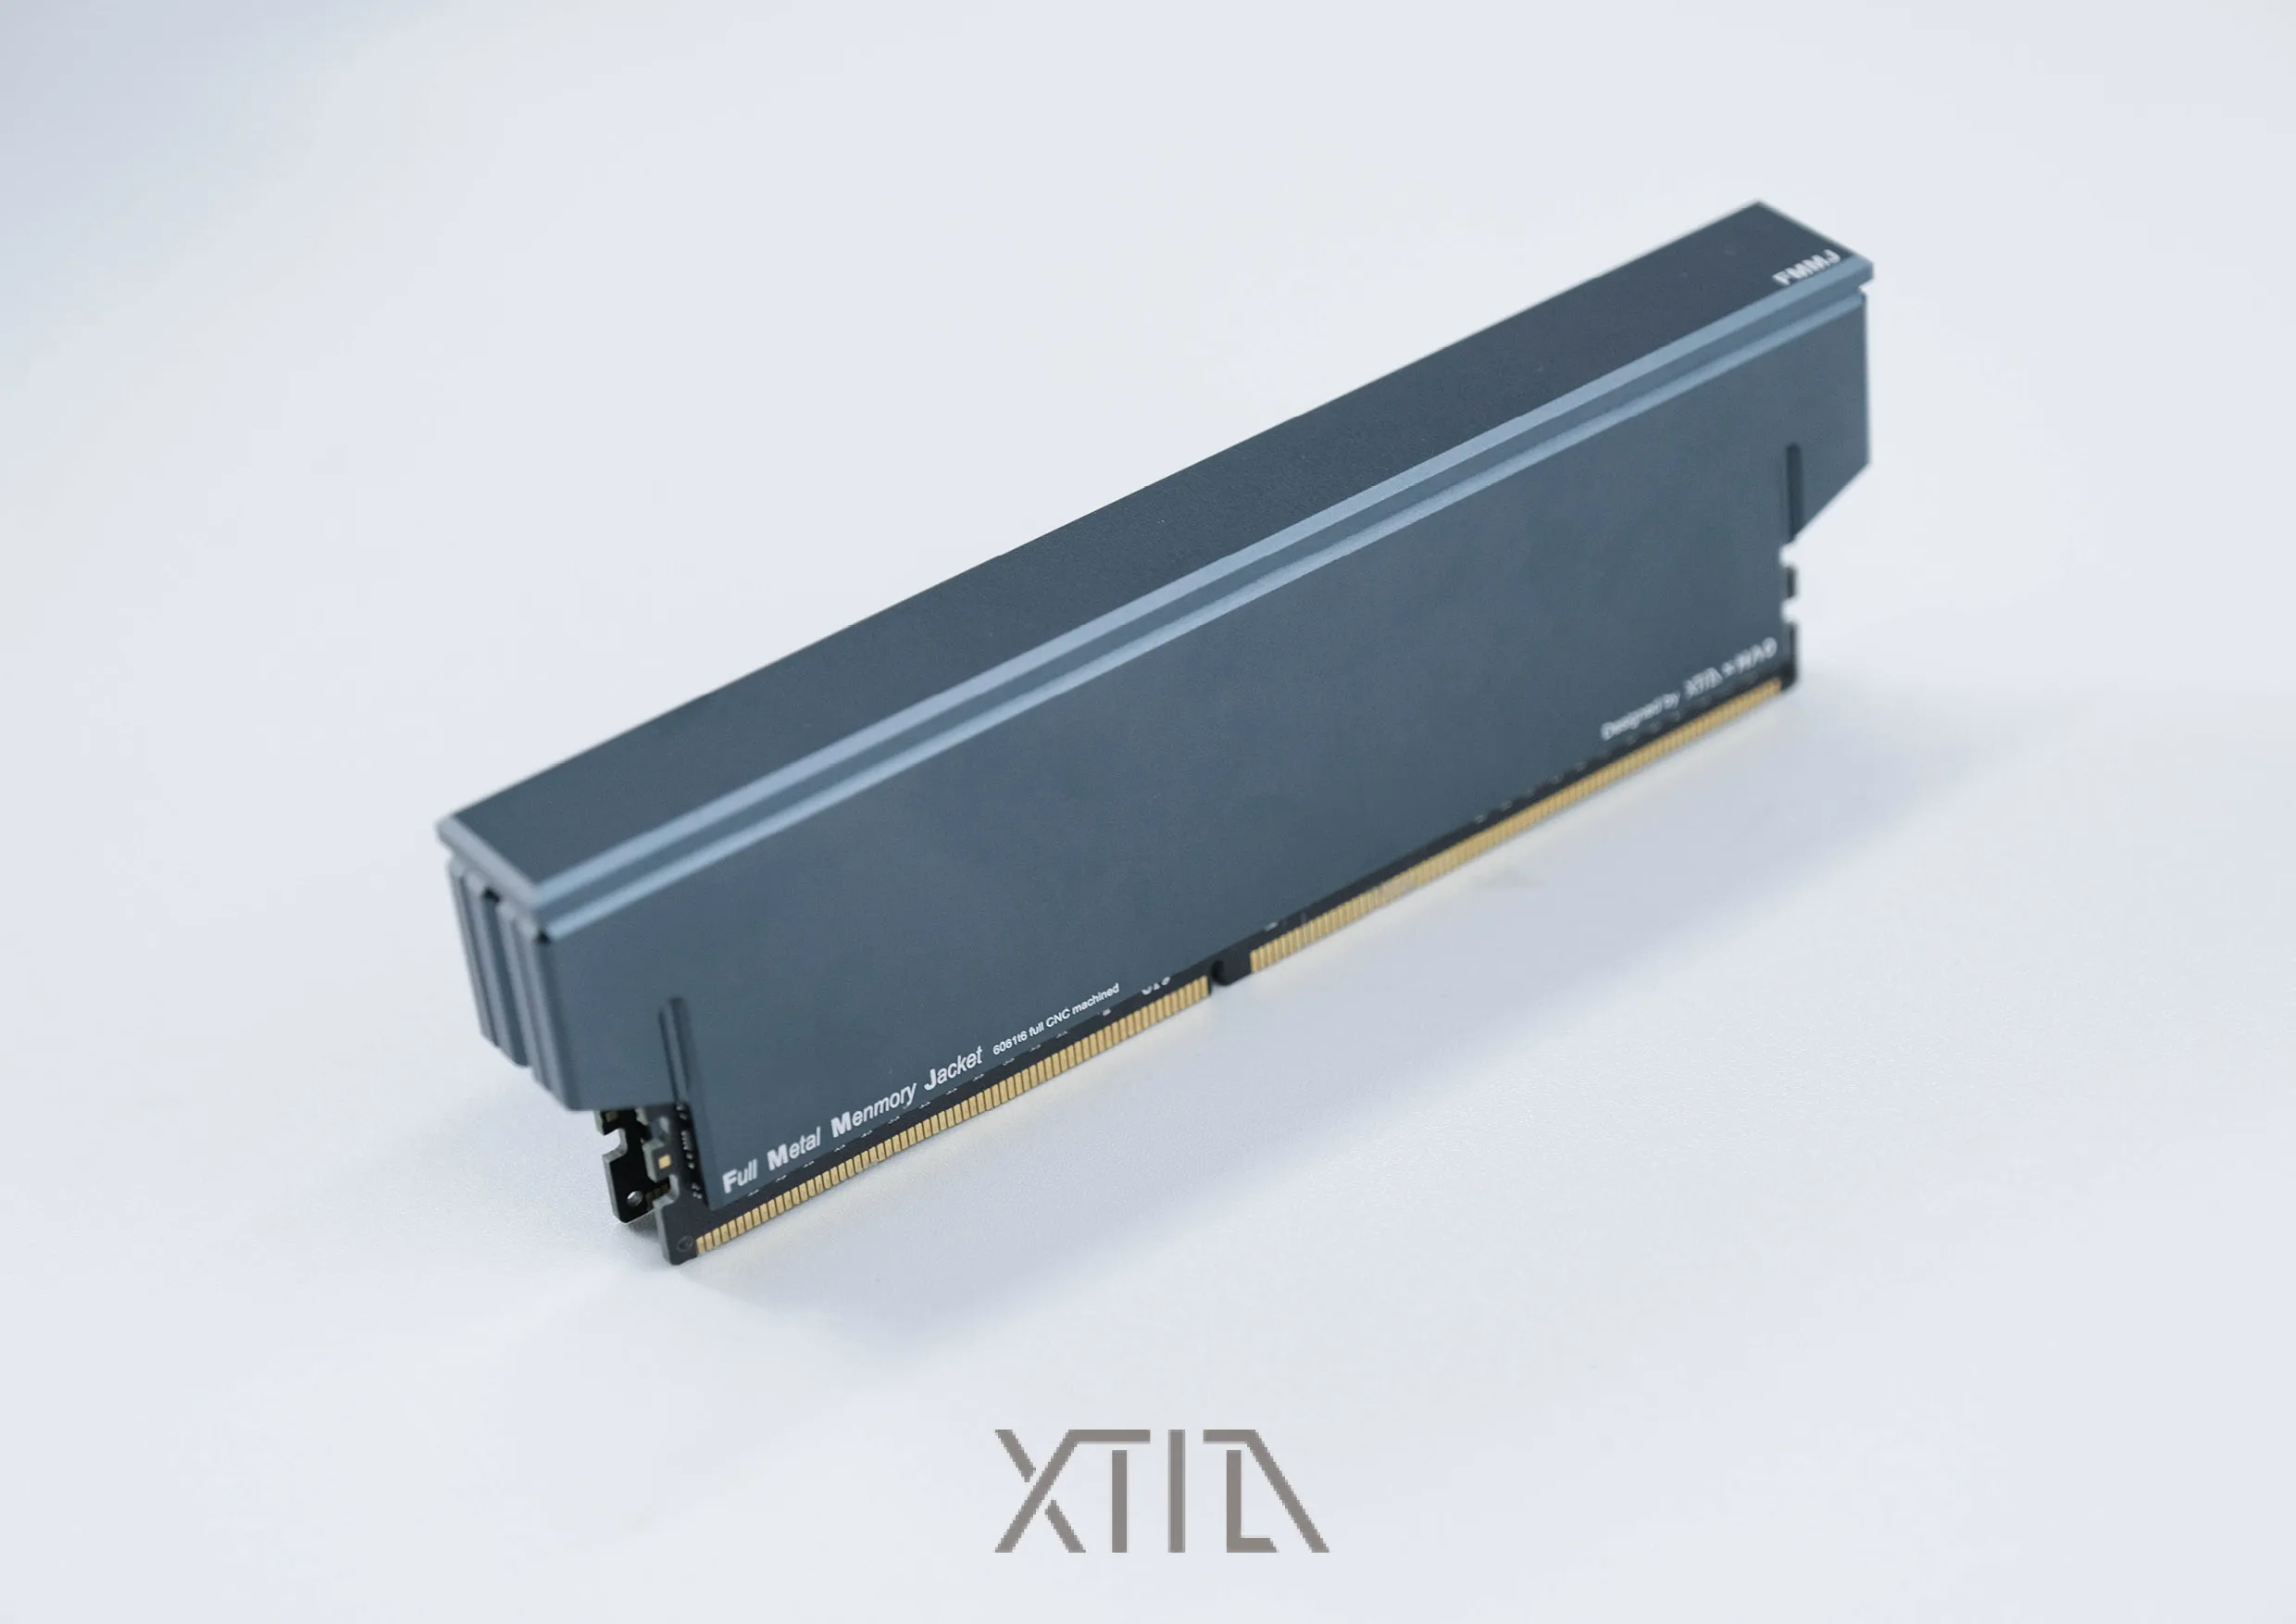 Жилет охлаждения памяти DDR4 DDR5 радиатор XTIA memory cooling armor полностью алюминиевый